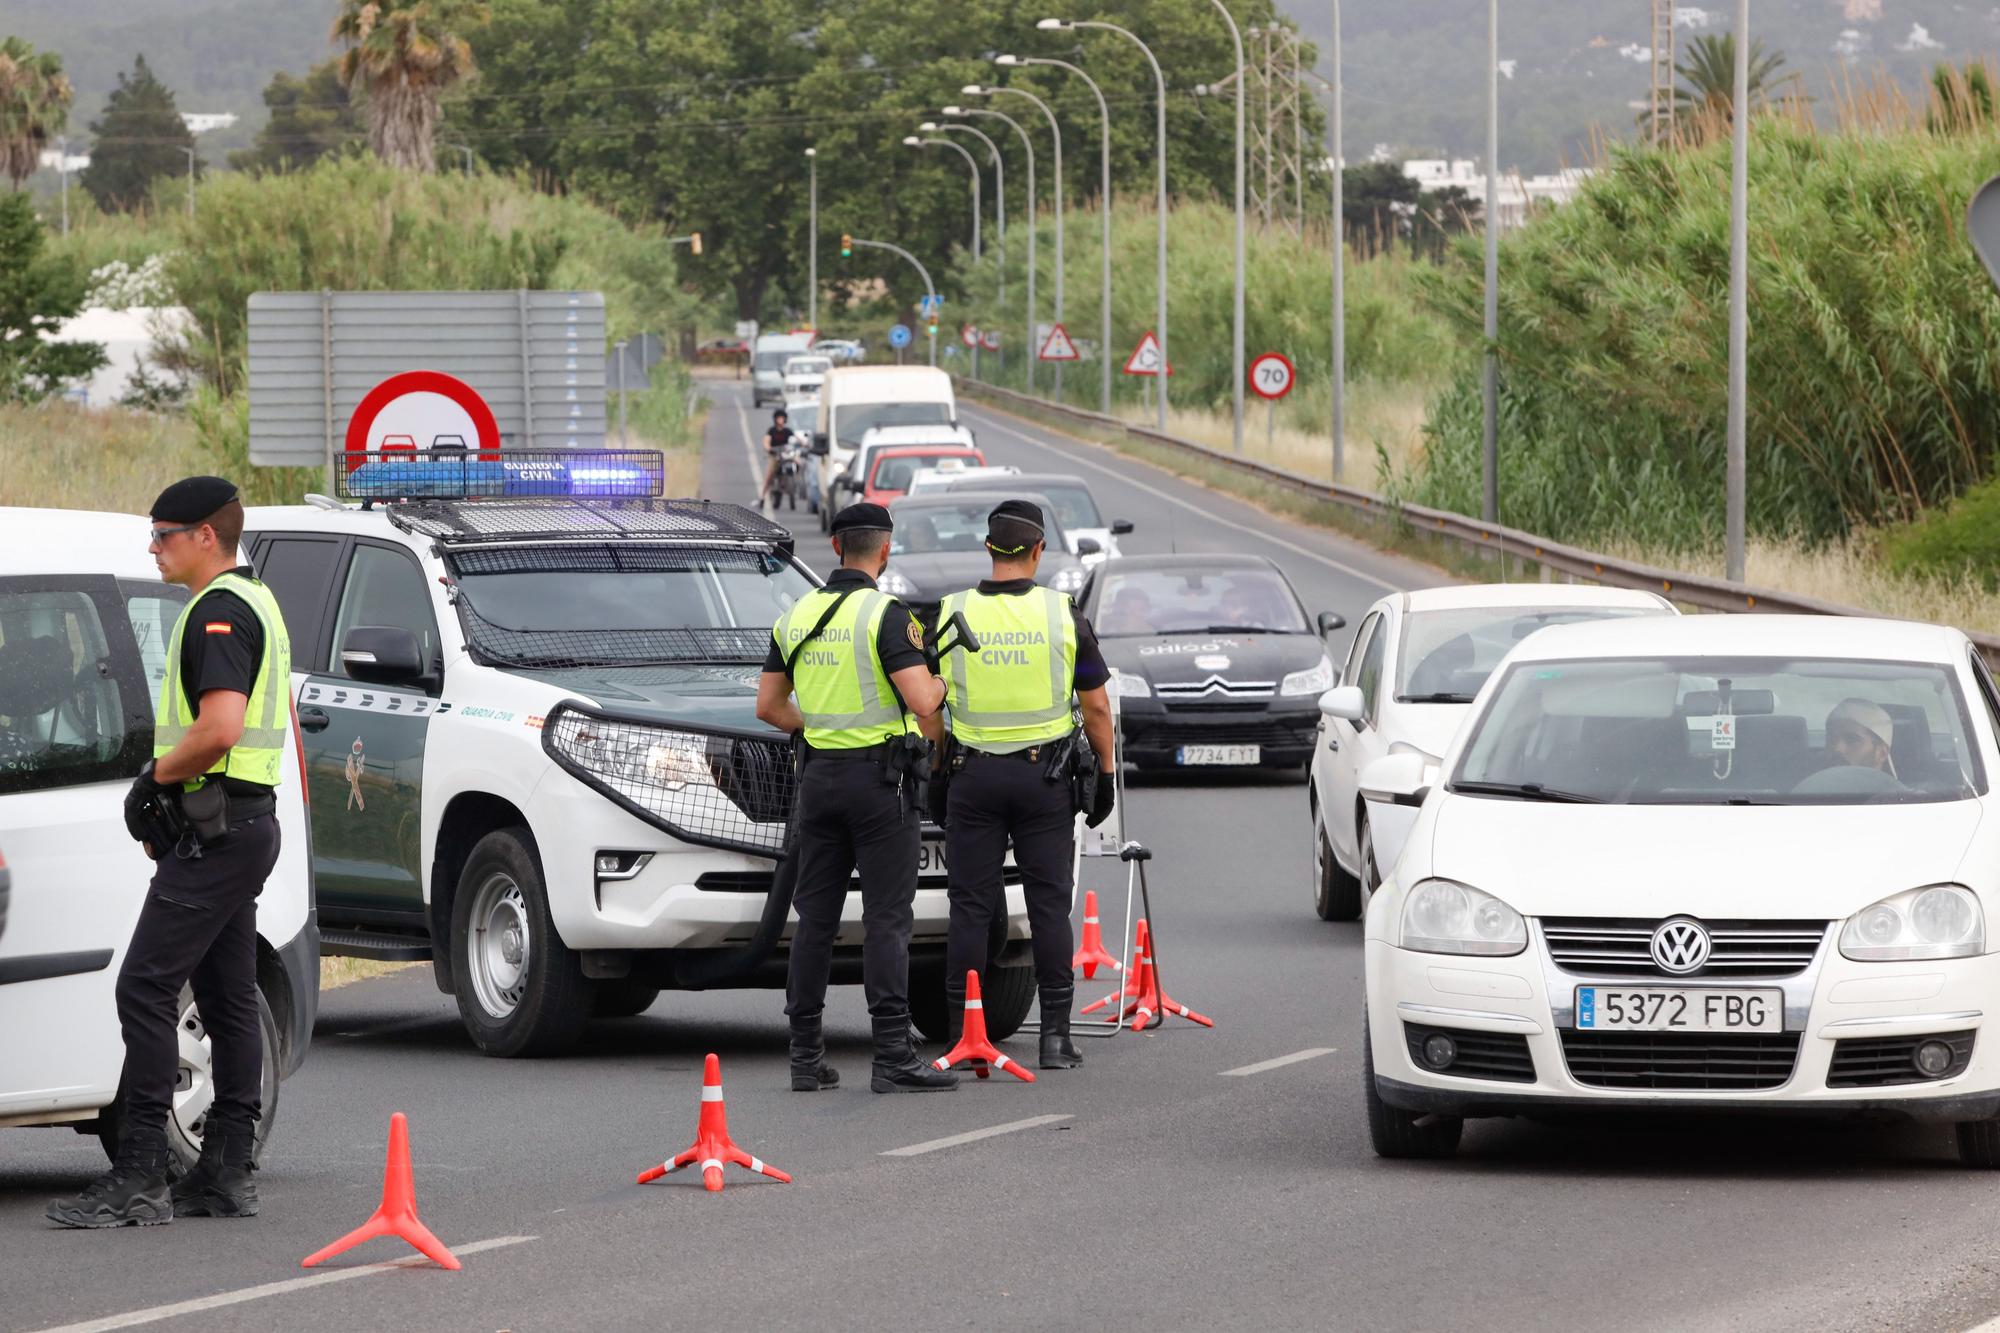 Vigilancia del grupo GAR de la Guardia Civil en Ibiza.